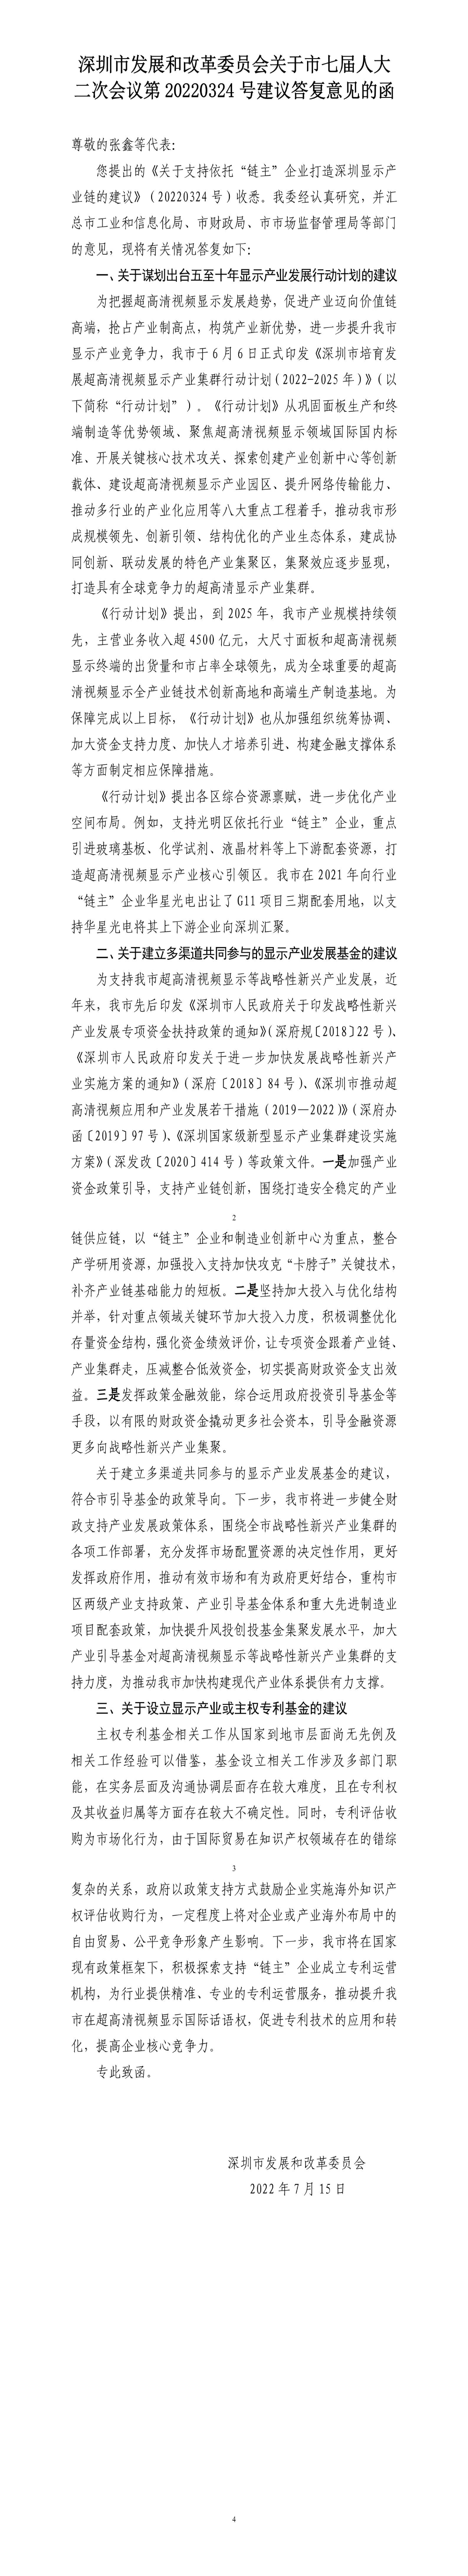 深圳市发展和改革委员会关于市七届人大二次会议第20220324号建议答复意见的函.jpg